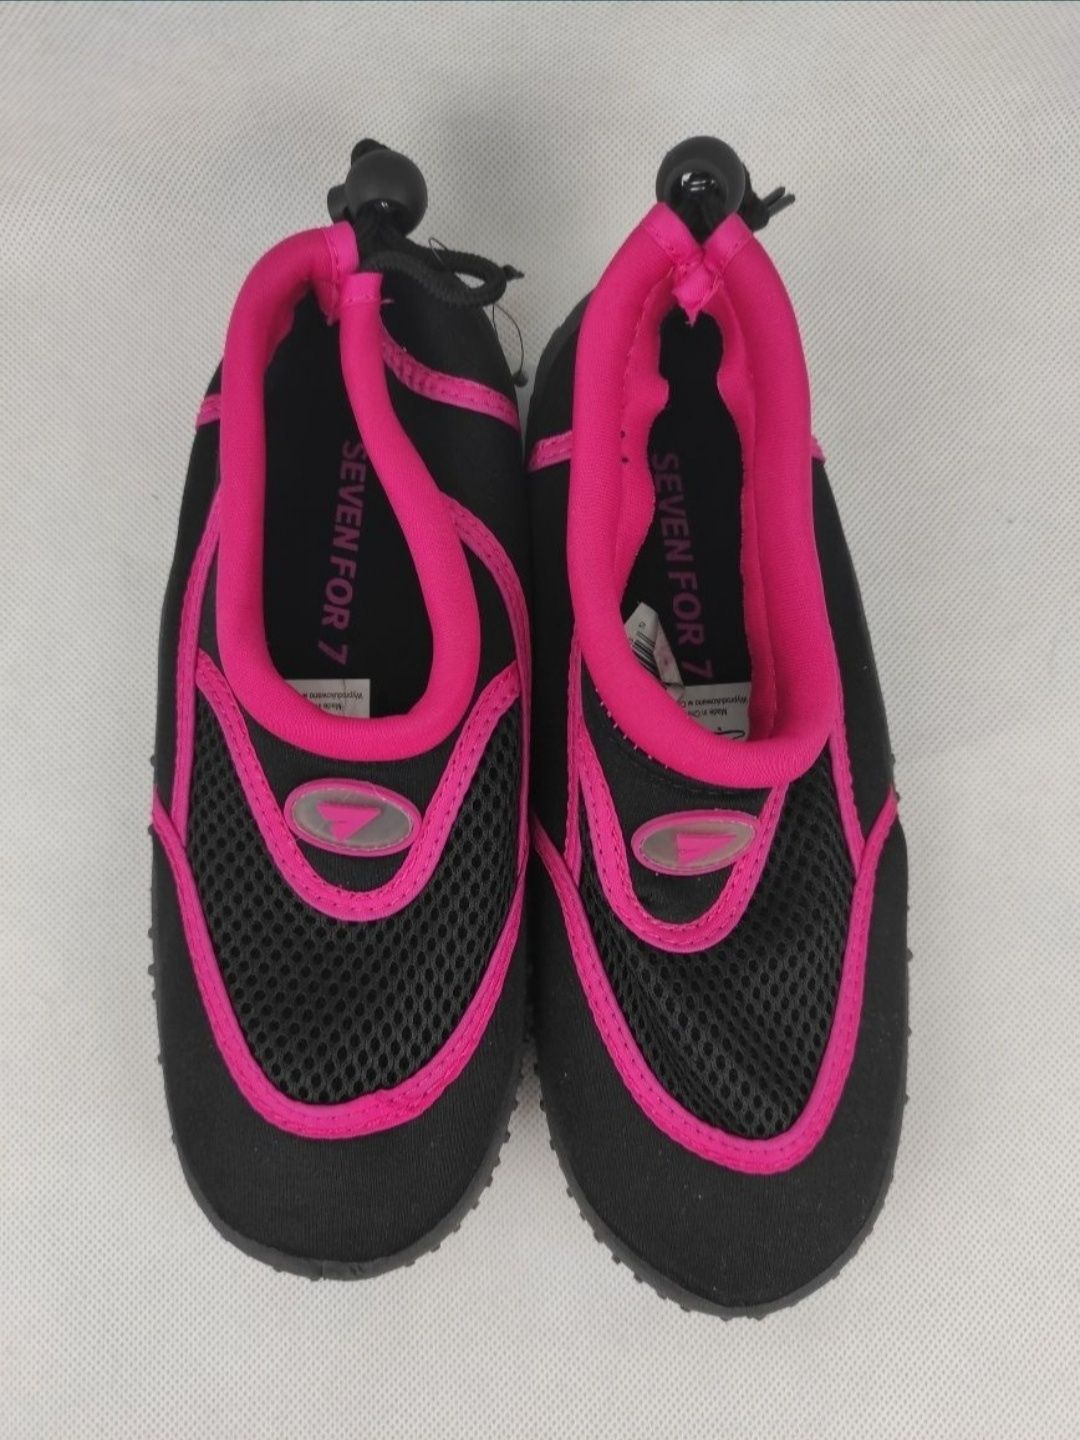 NOWE damskie czarno różowe buty do chodzenia w wodzie rozmiar 36